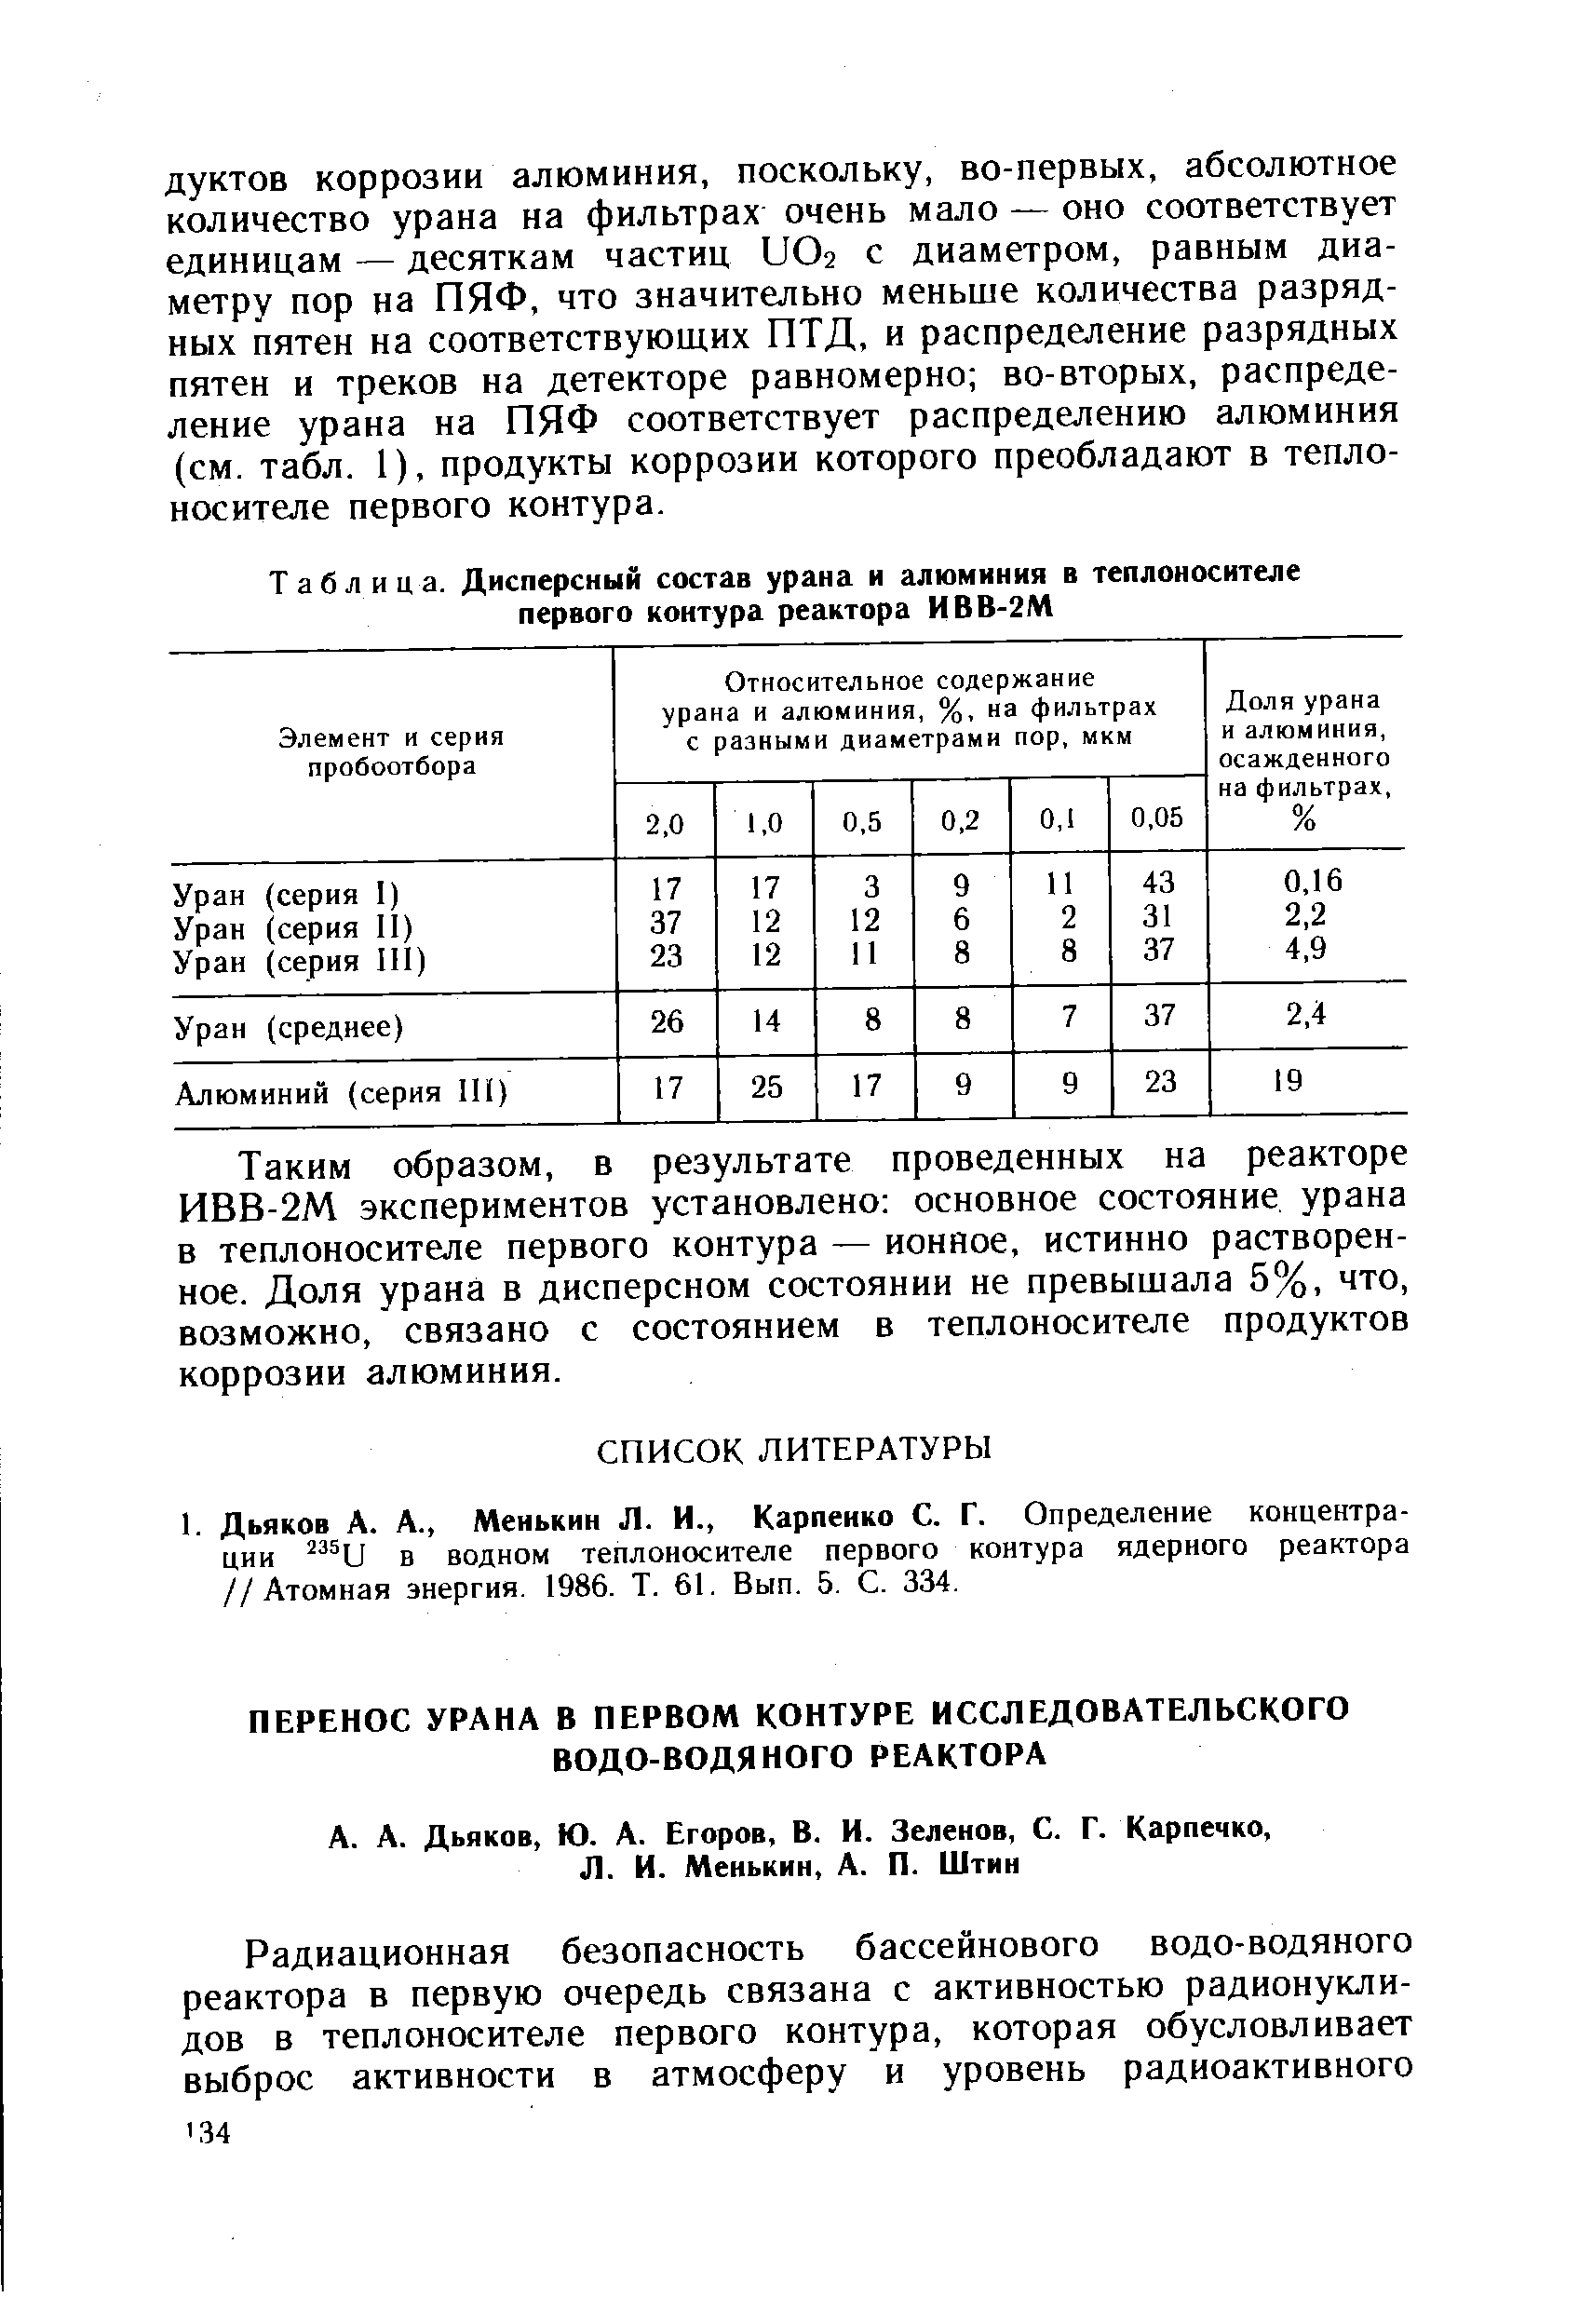 Таблица. Дисперсный состав урана и алюминия в теплоносителе <a href="/info/54659">первого контура</a> реактора ИВВ-2М
